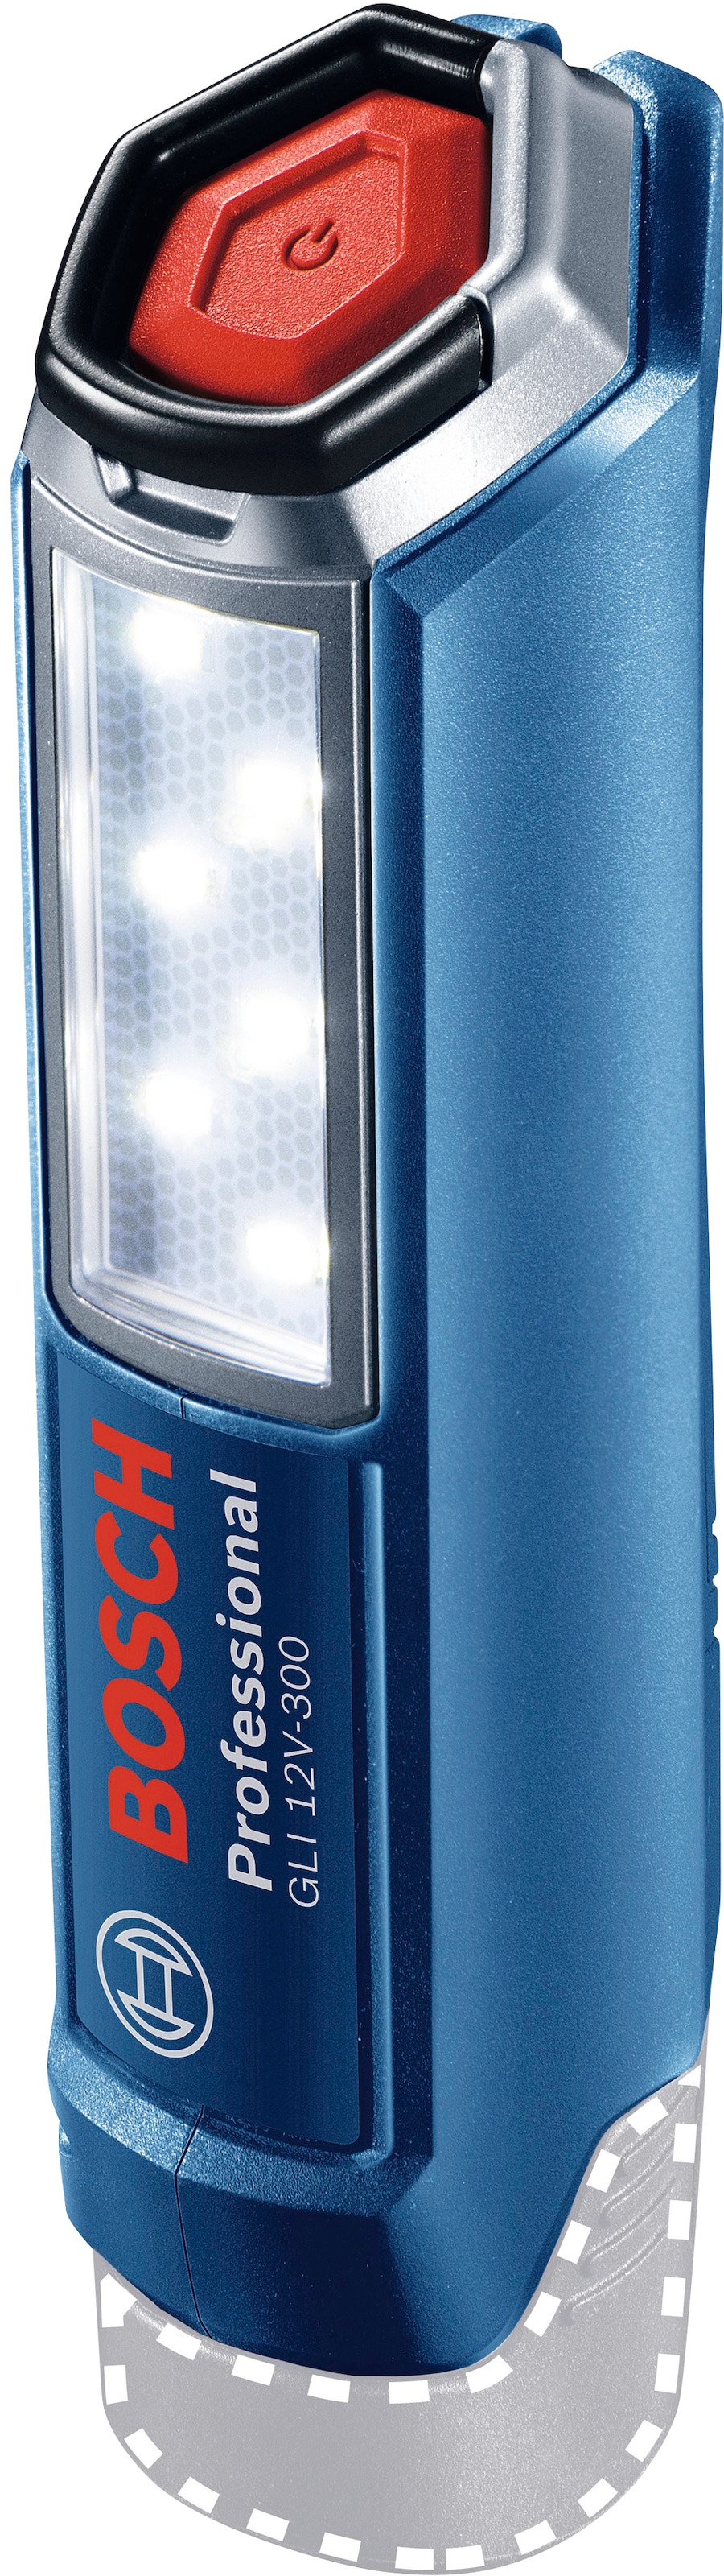 OTTO Akku LED Online im ohne Arbeitsleuchte 12V-300«, Professional 12 Bosch Shop »GLI kaufen 300 lm, V,